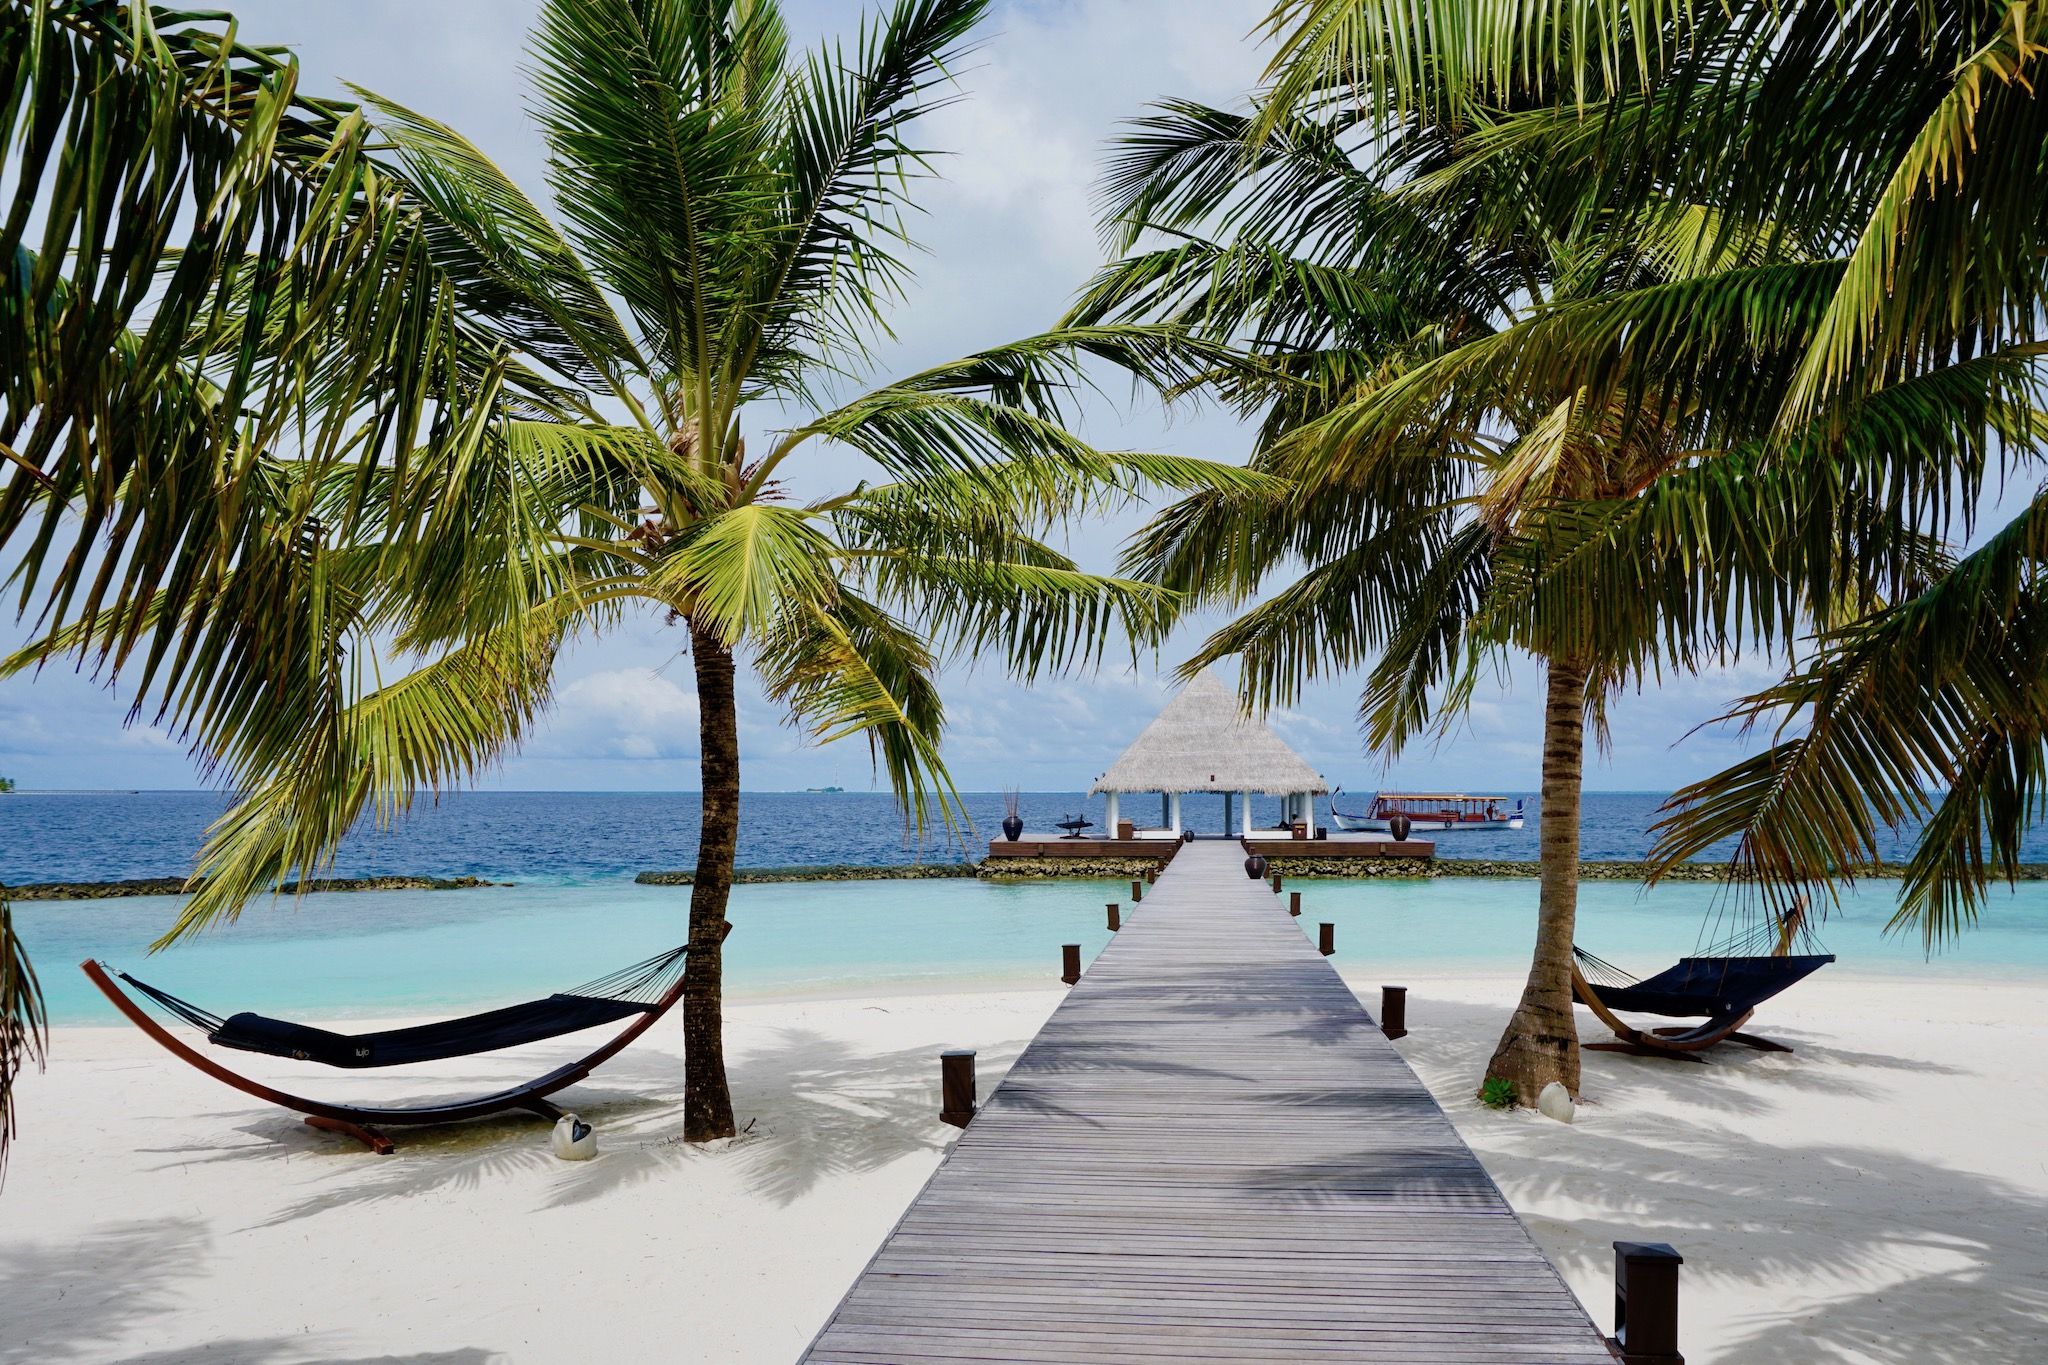 Paradise heeft een naam: Coco Bodu Hithi - alle informatie over het eiland in ons reisverslag! Foto: Sascha Tegtmeyer